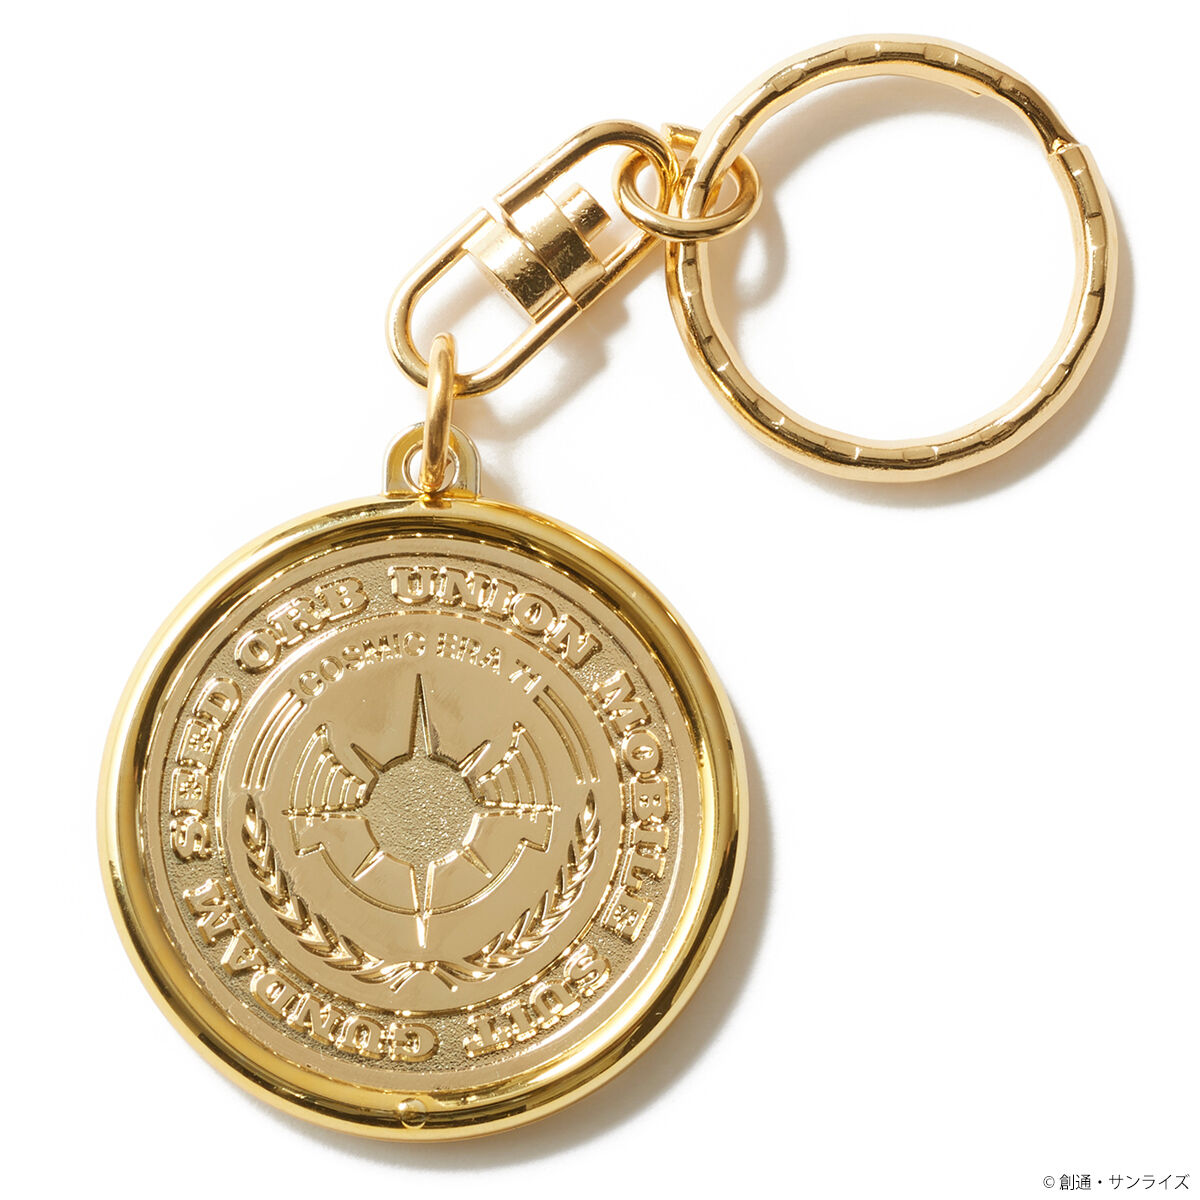 東京大学 創立記念 1877 記念メダル キーホルダー - アンティーク雑貨